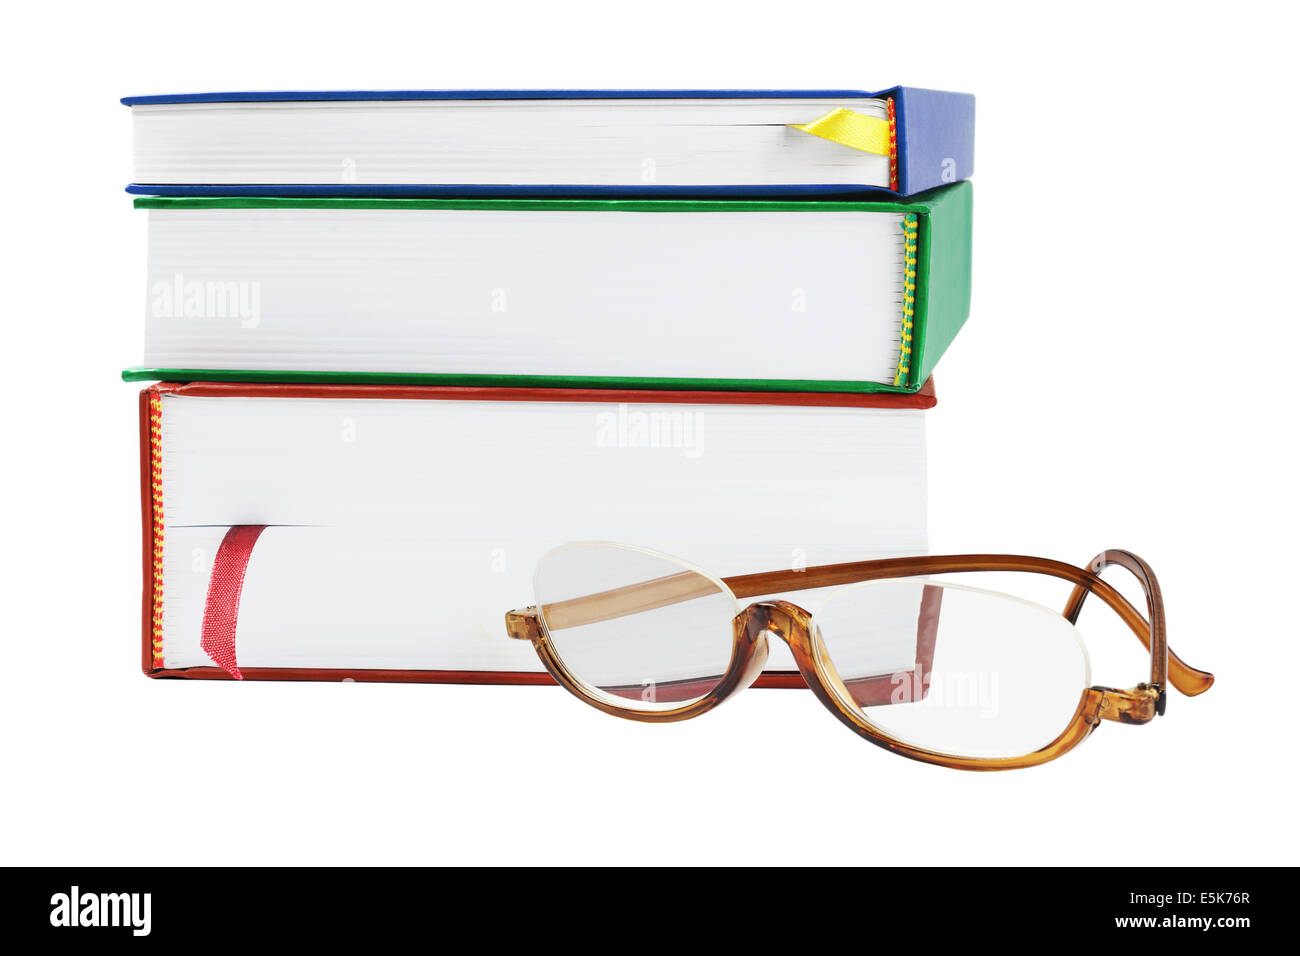 Par de gafas de lectura y de los libros de texto sobre fondo blanco. Foto de stock